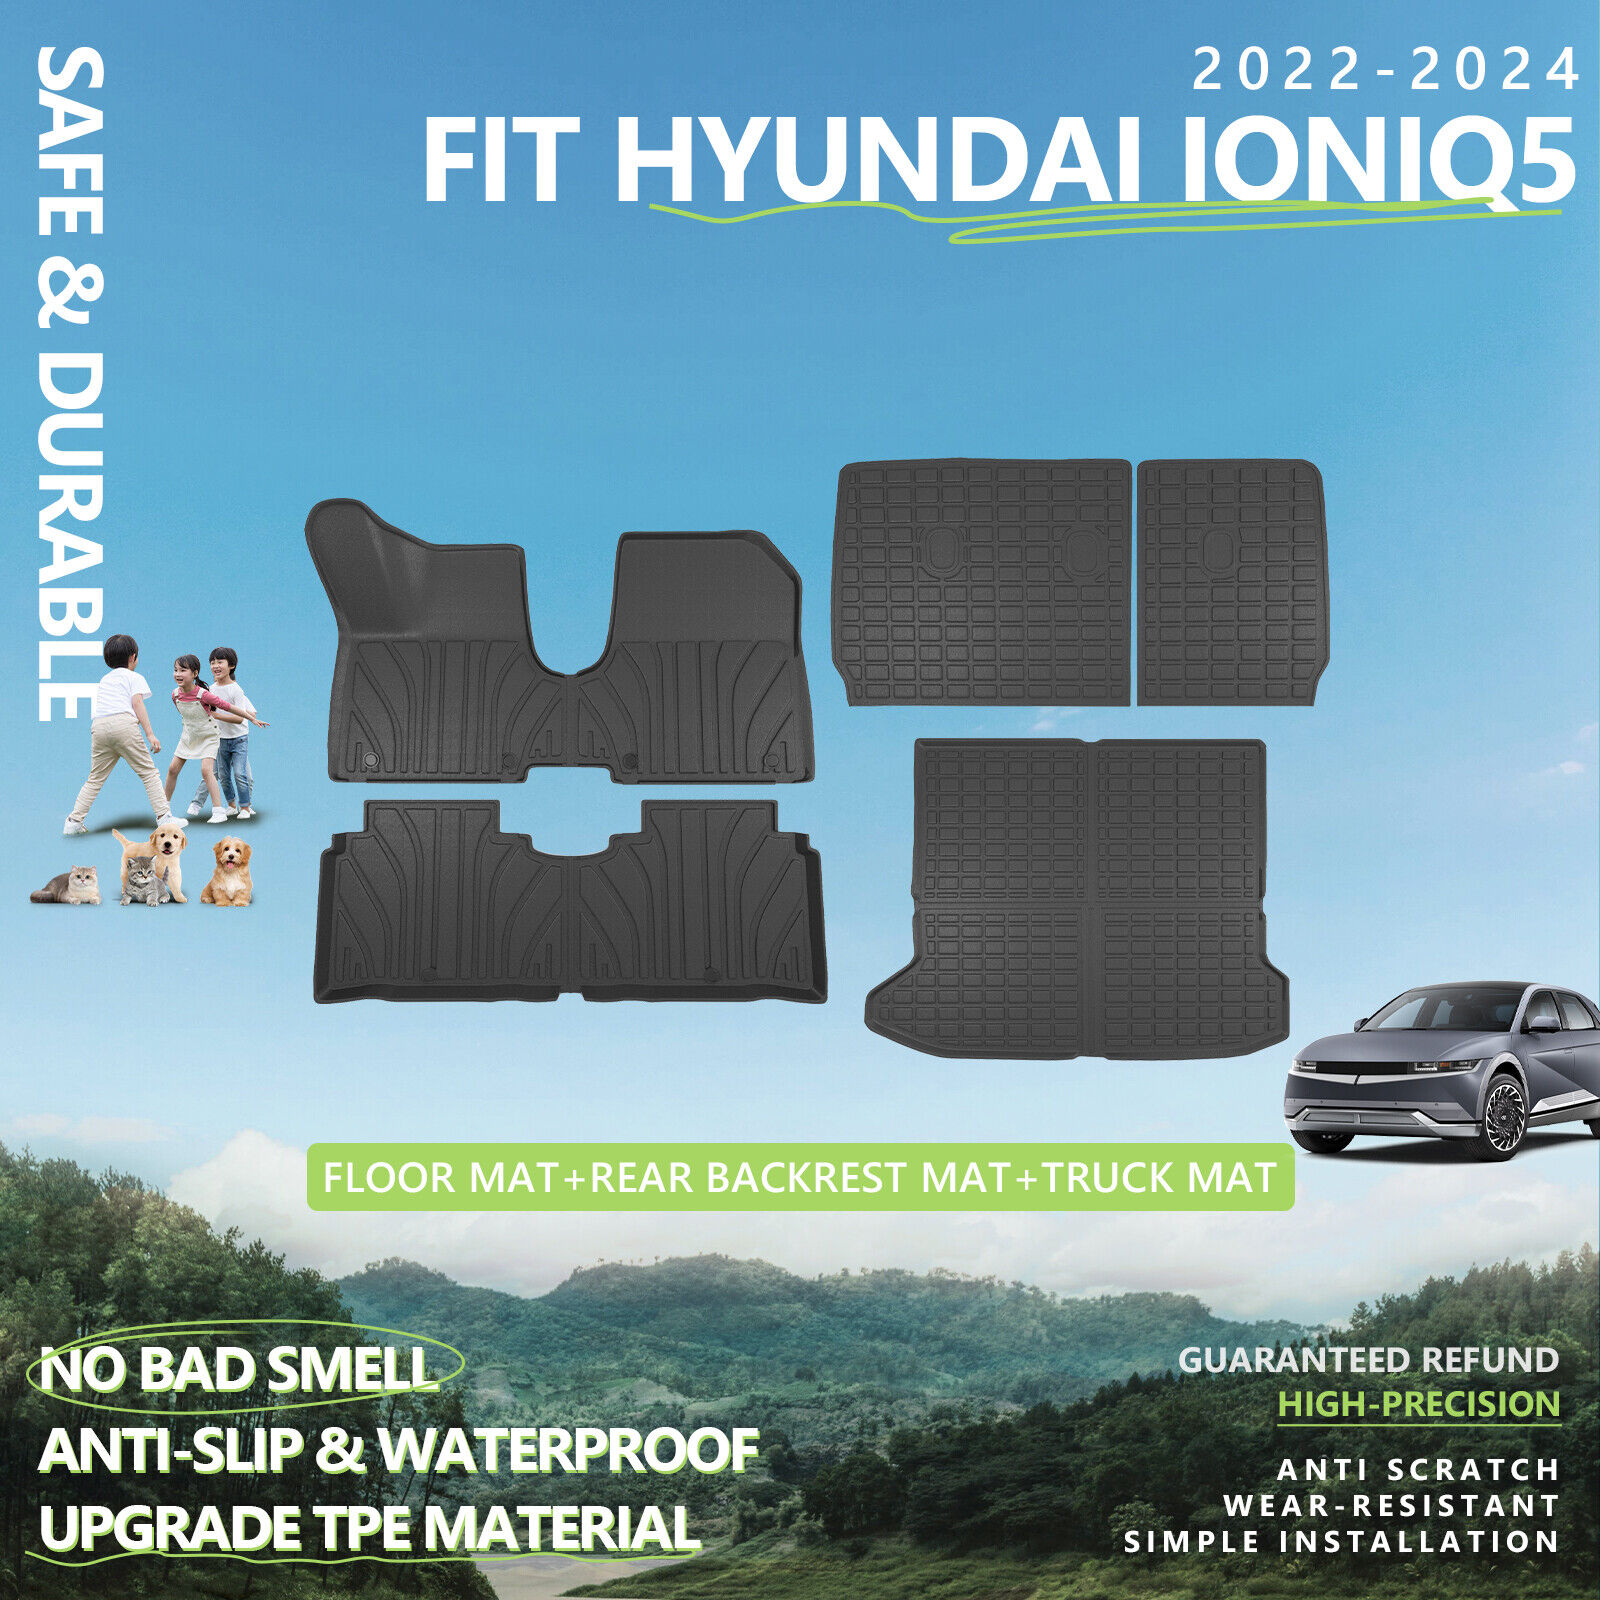 For 2022-2024 Hyundai Ioniq 5 Floor Mats Backrest Mat Trunk Mat Cargo Liners